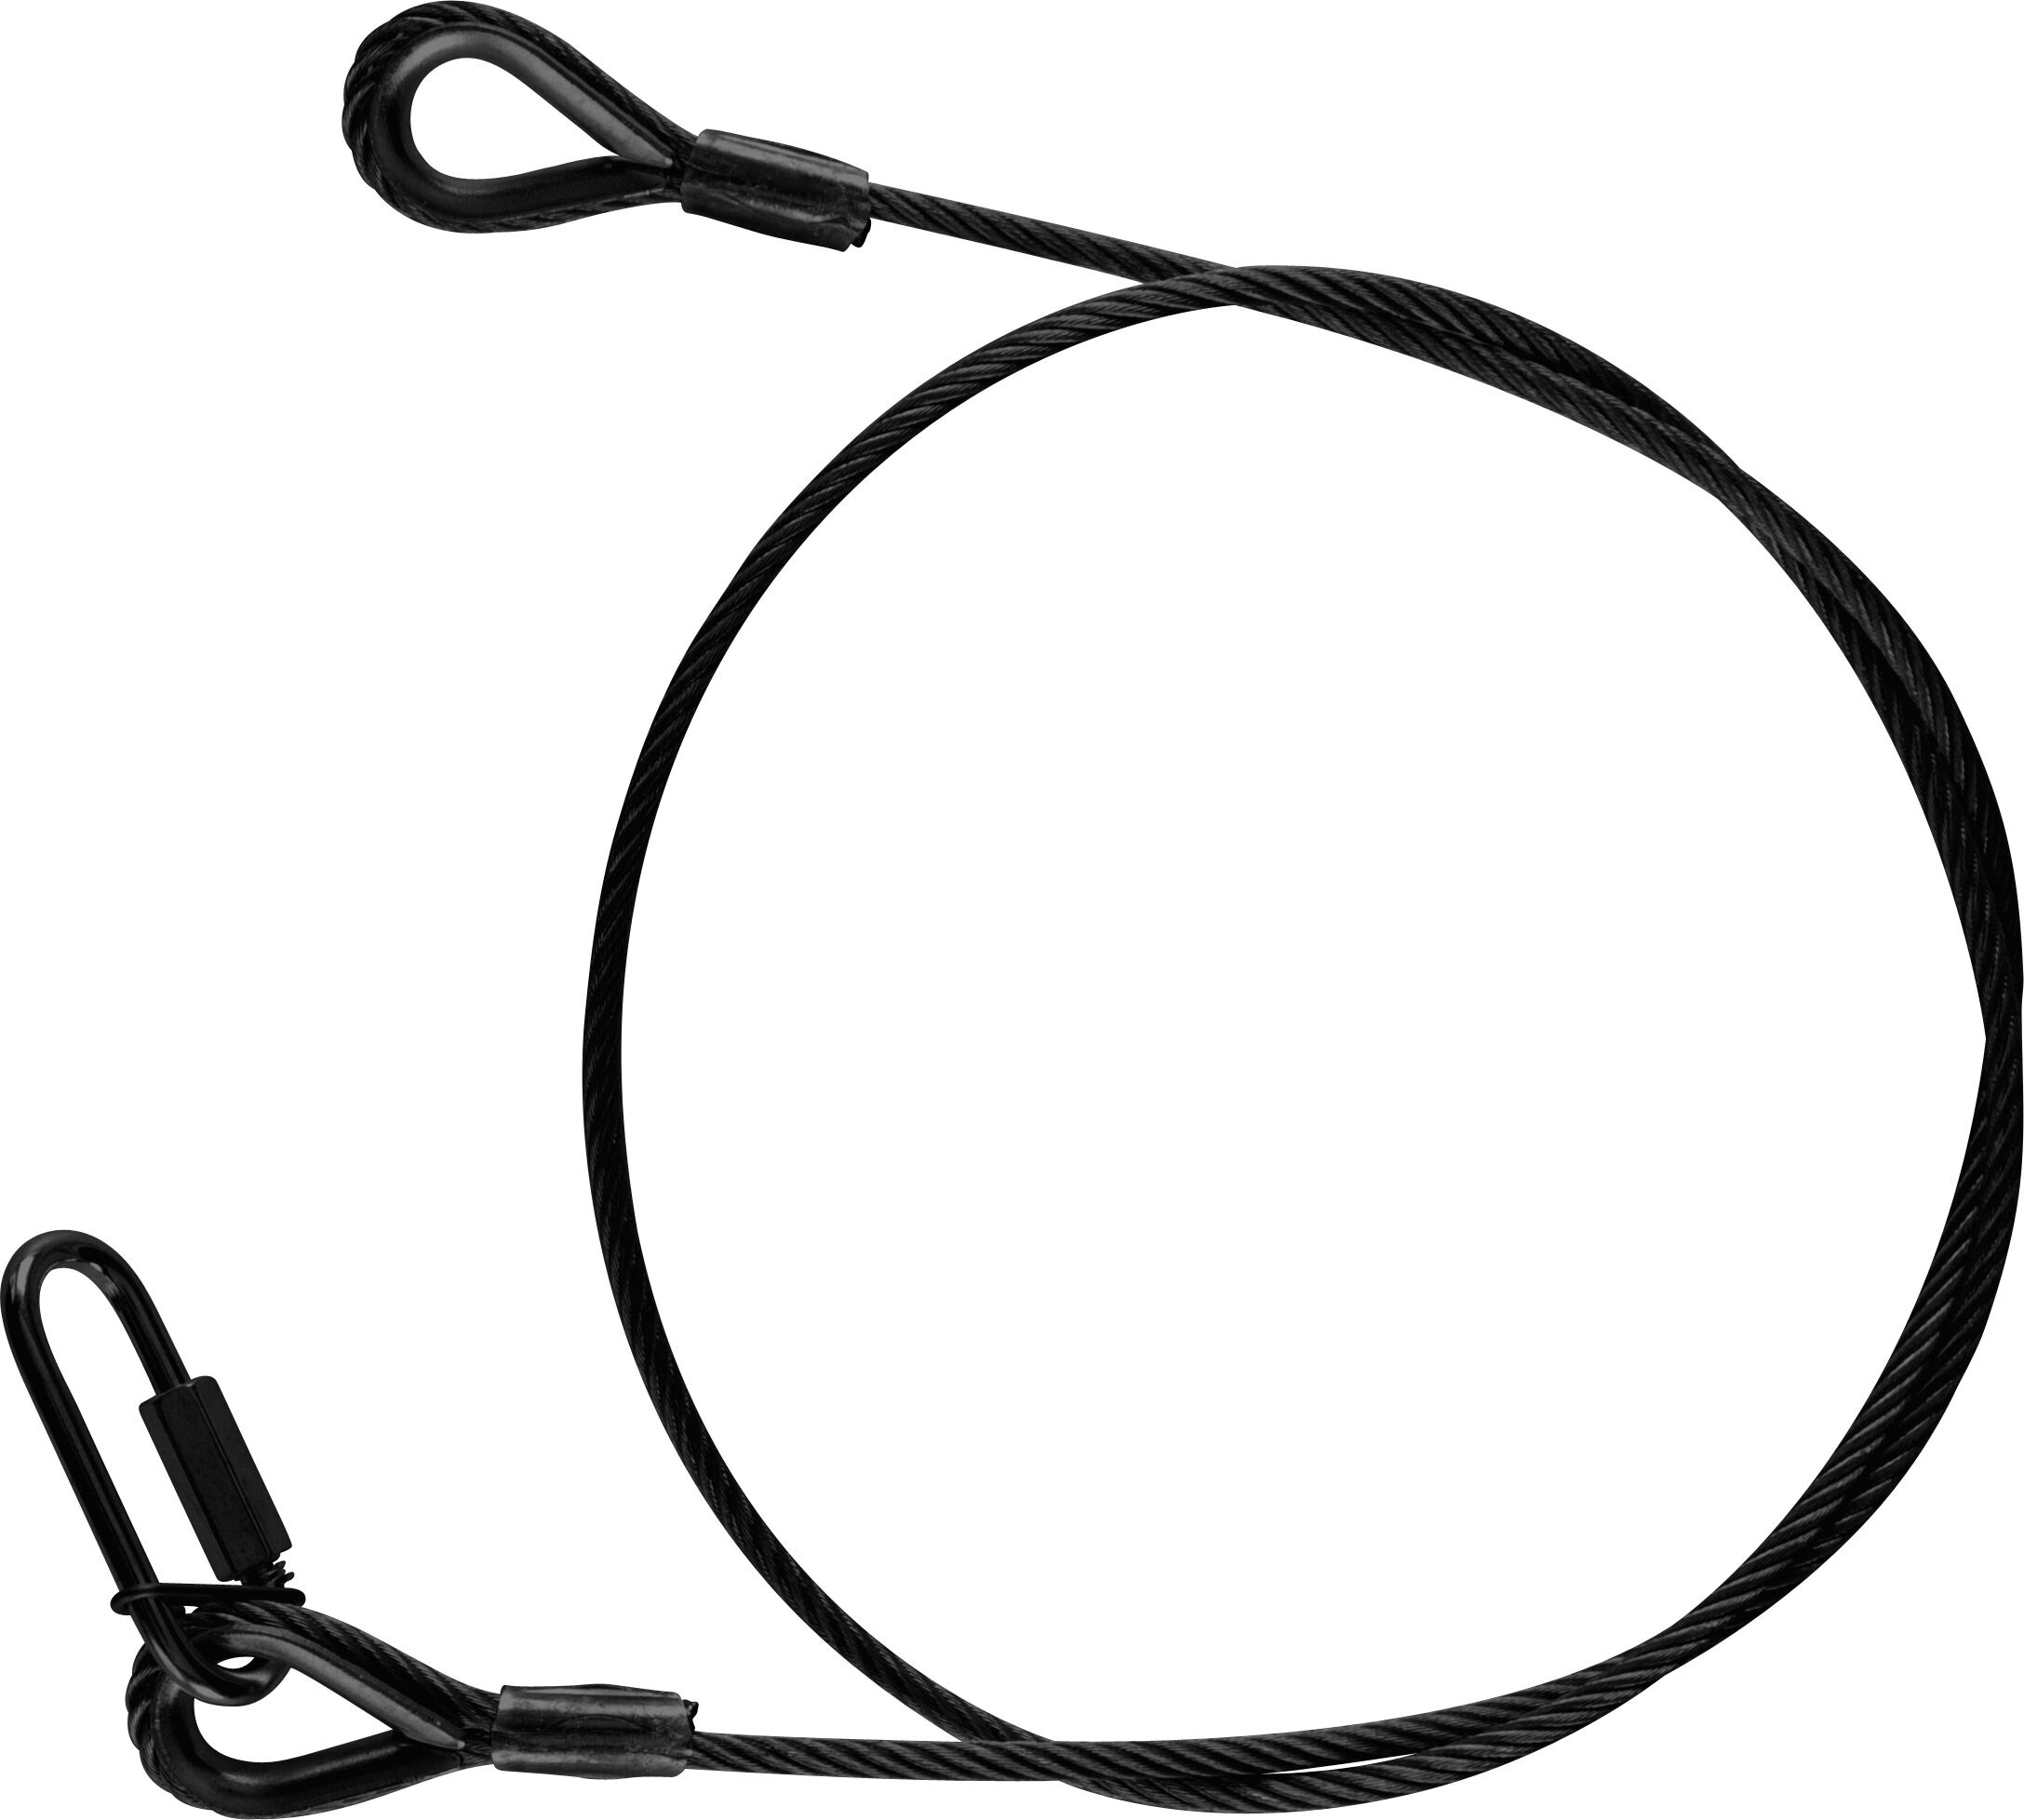 Riggatec corde de sécurité 100 cm x 4 mm à 16 kg noir - Câbles de sécurité